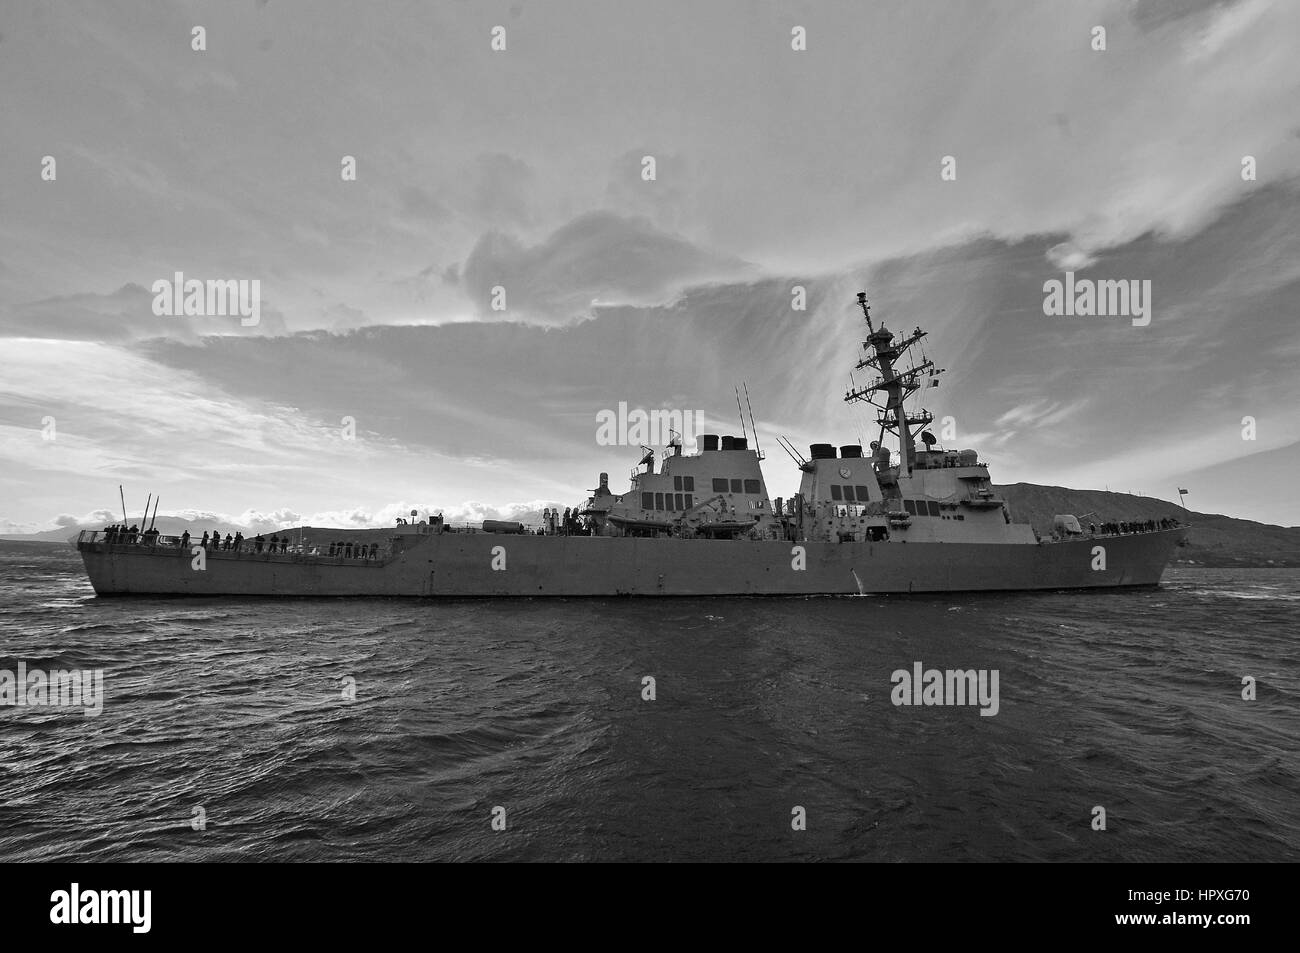 Visite-missile destroyer USS Laboon (DDG 58) si diparte la Marathi NATO pier facility in Grecia a seguito di una visita porta a sostegno dell'operazione di sicurezza sforzi, Souda Bay, Grecia, 2012. Immagine cortesia Paolo Farley//US Navy. Foto Stock